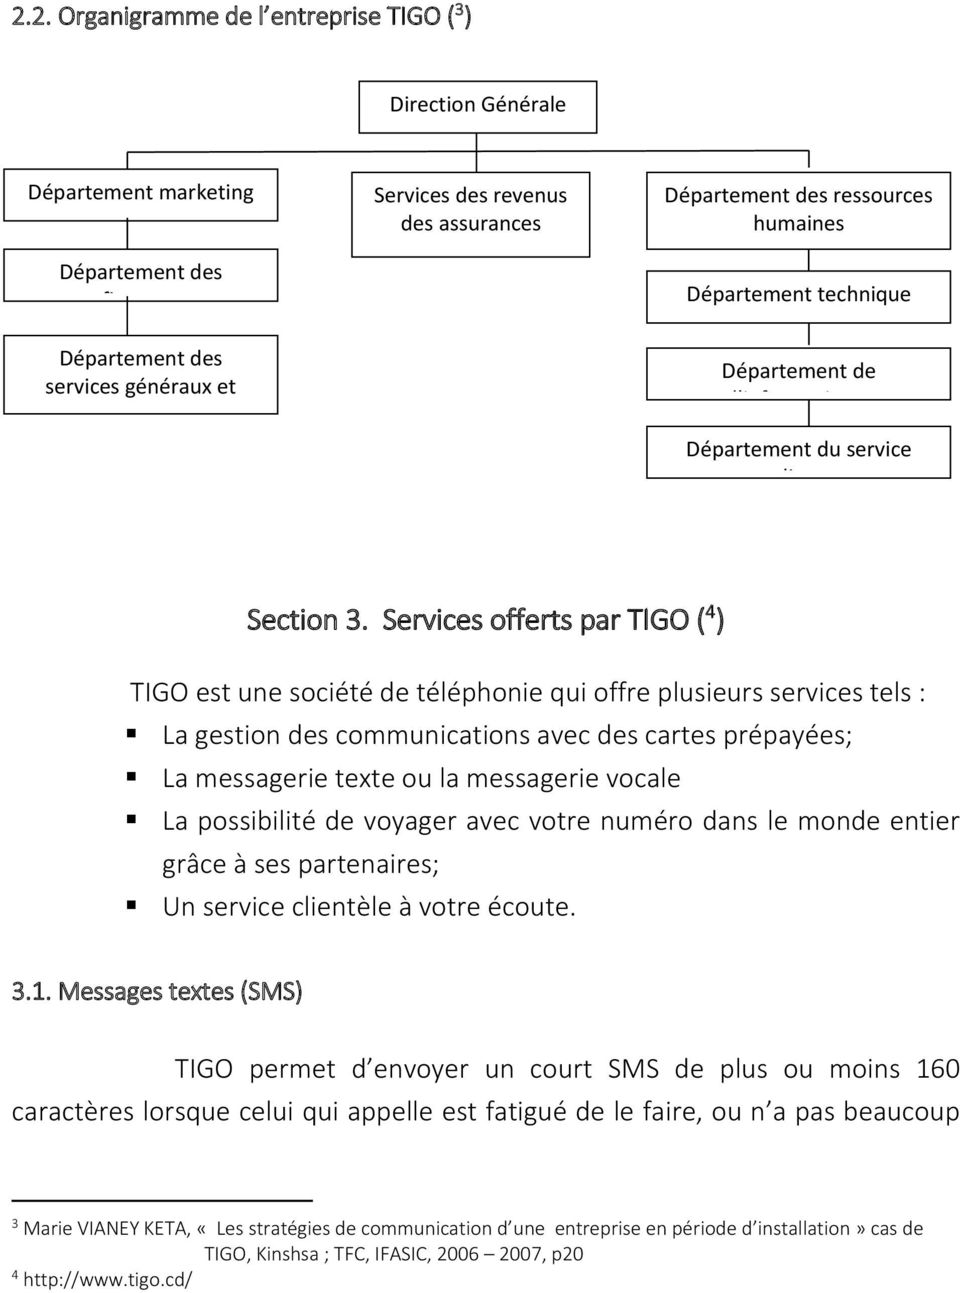 Services offerts par TIGO ( 4 ) TIGO est une société de téléphonie qui offre plusieurs services tels : La gestion des communications avec des cartes prépayées; La messagerie texte ou la messagerie